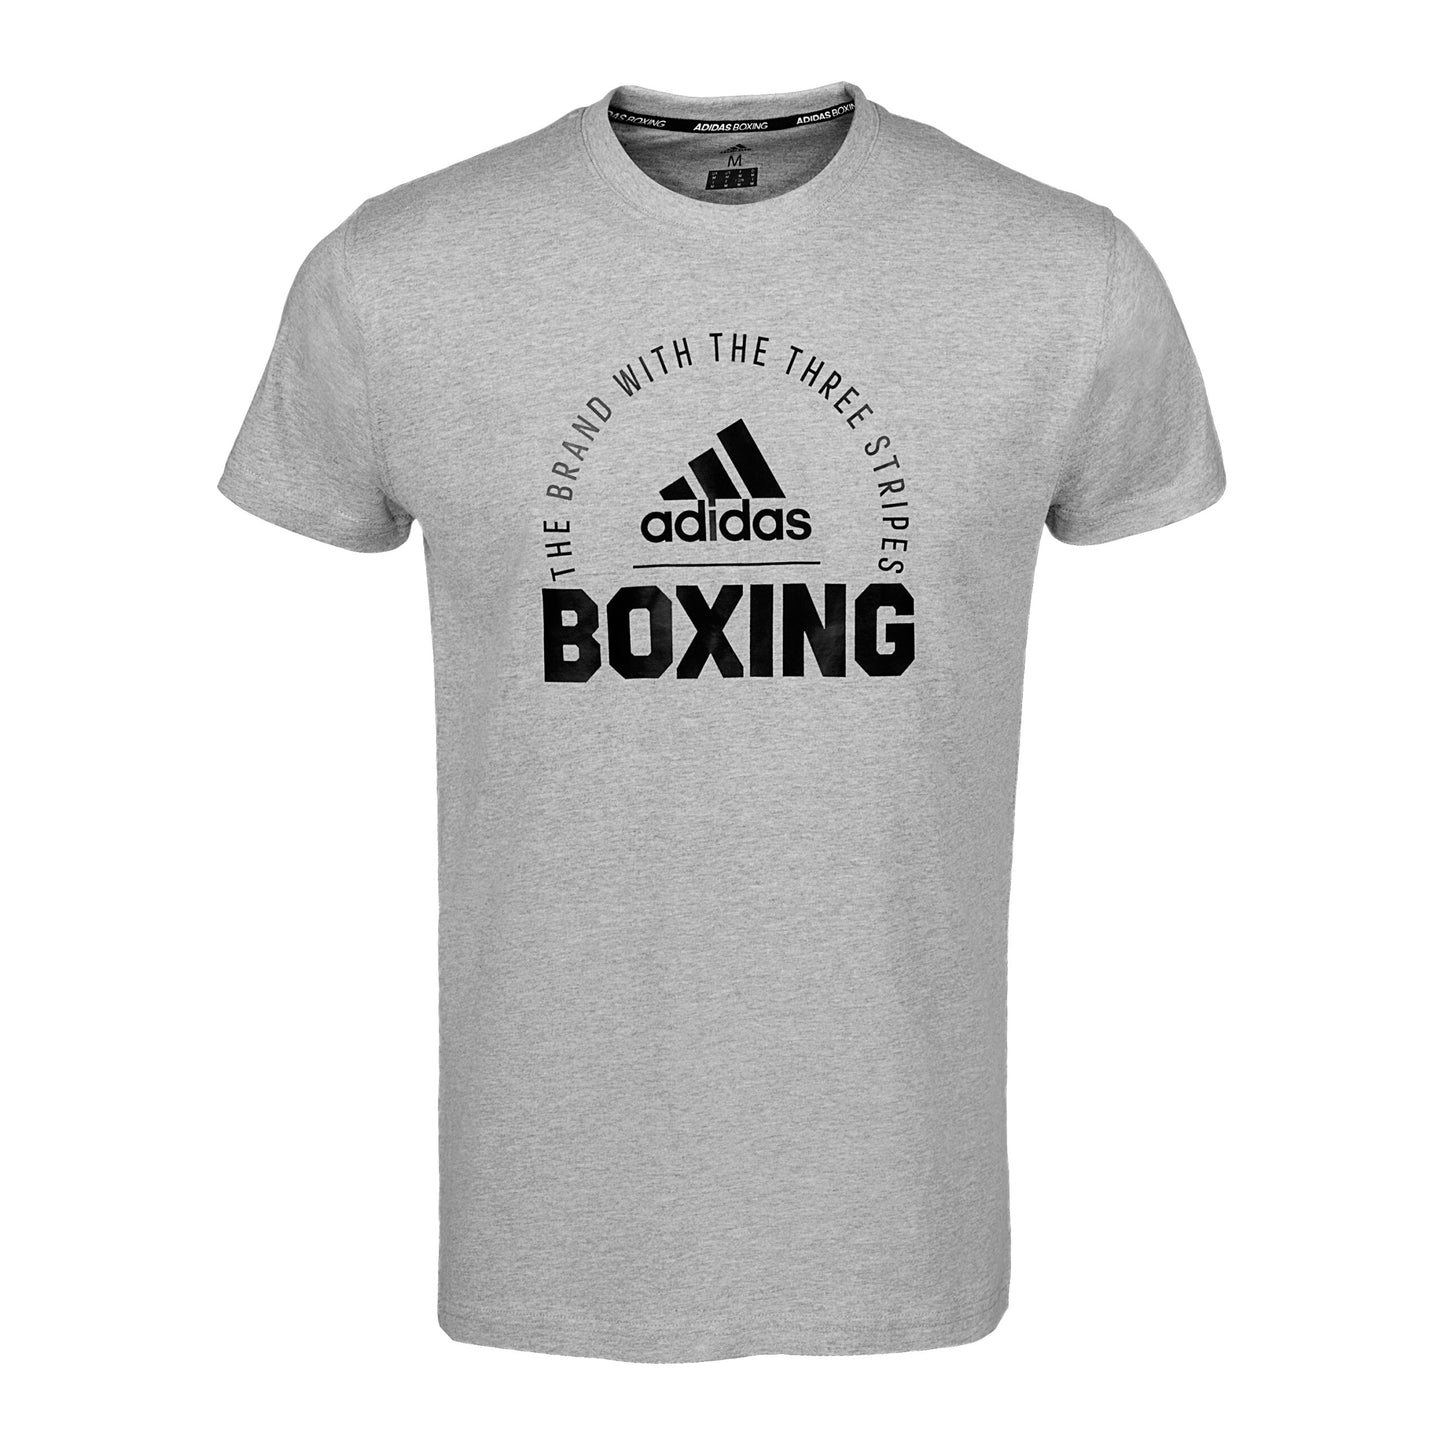 Clts21 B Adidas Boxing T Shirt Grey 01